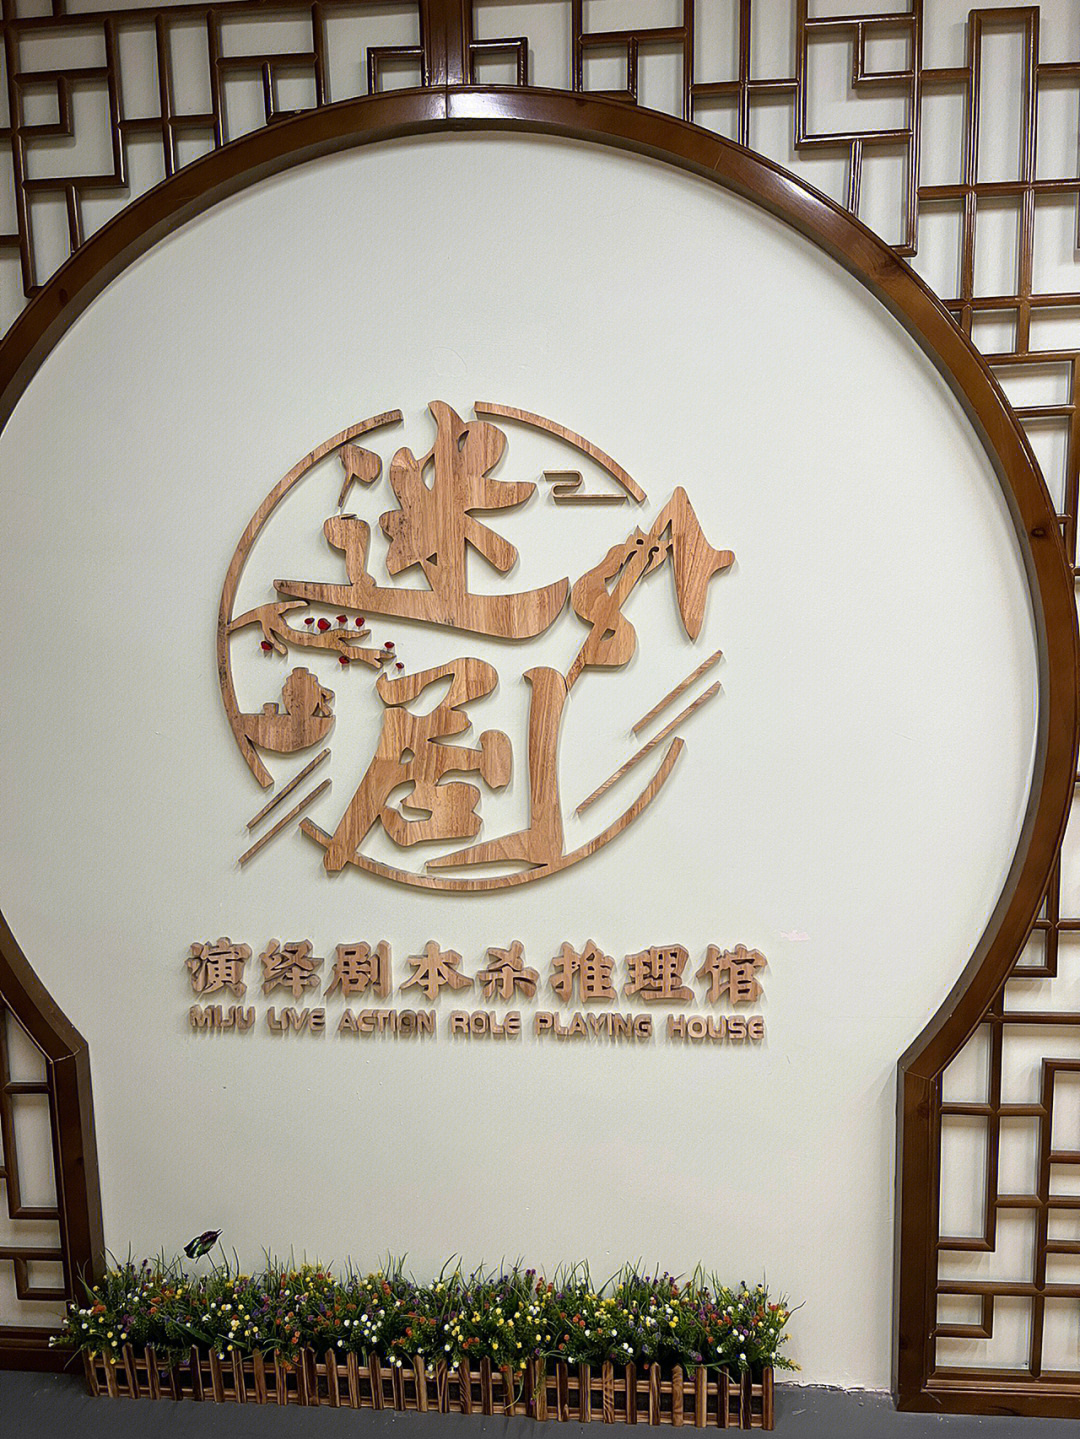 花城汇logo图片